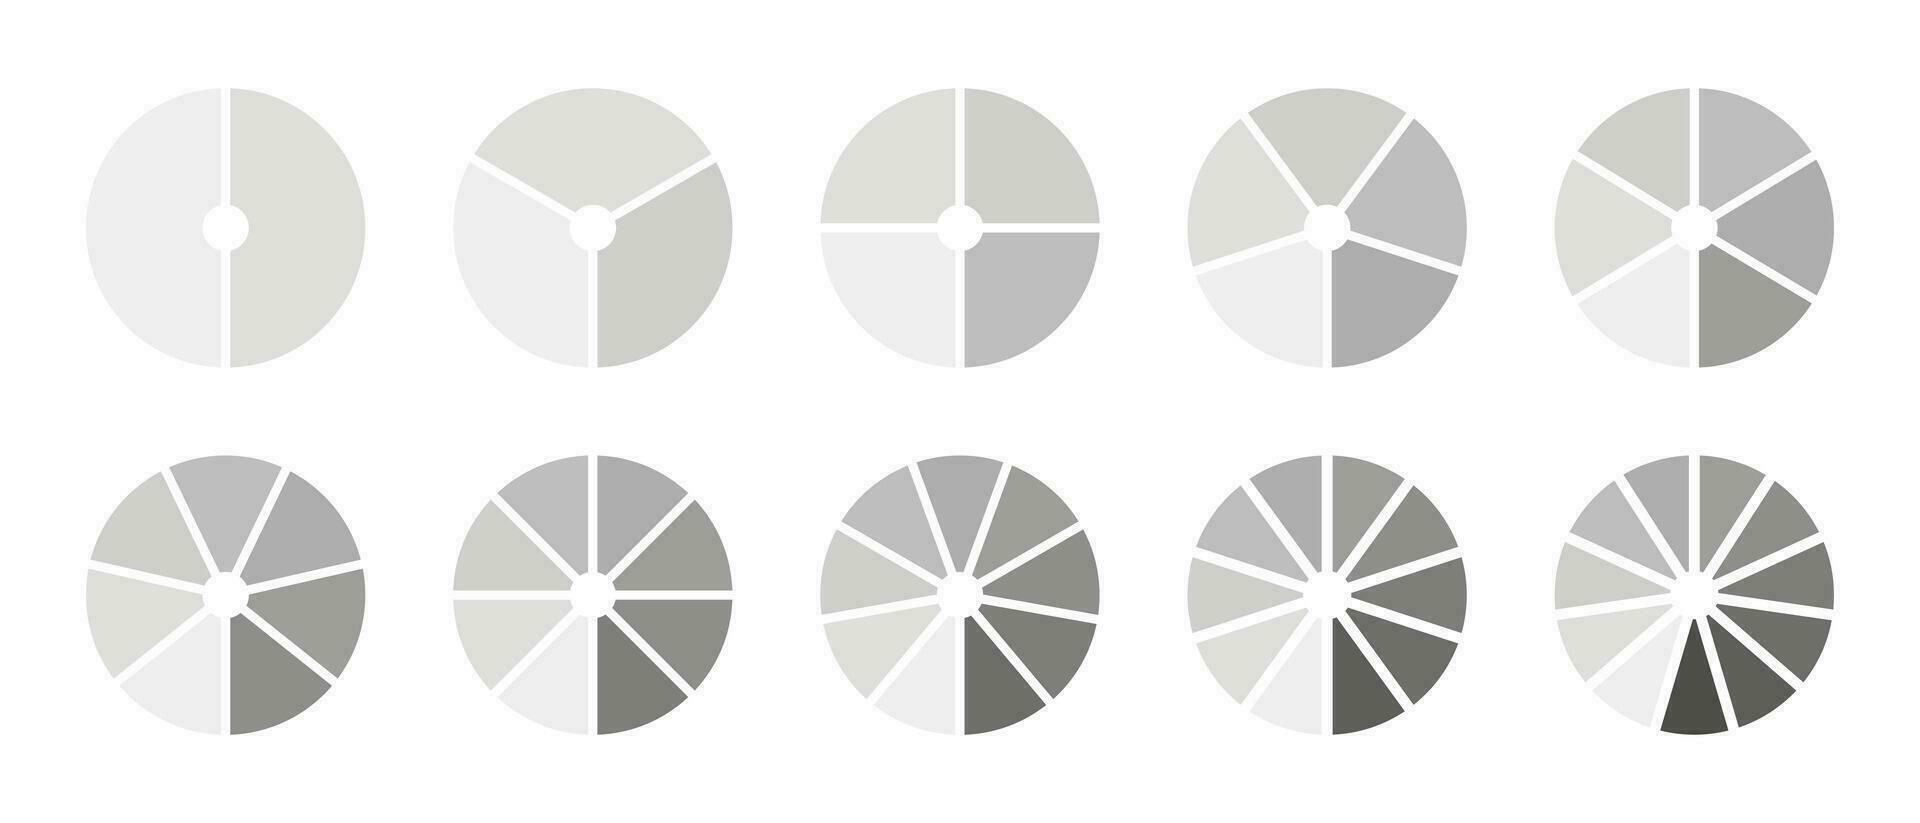 uppsättning av cirkel division på 2, 3, 4, 5, 6, 7, 8, 9, 10, 11 likvärdig delar. infographic grafer. runda dividerat diagram med segment. infographic samling. coaching hjul ämnen. vektor illustration. eps.